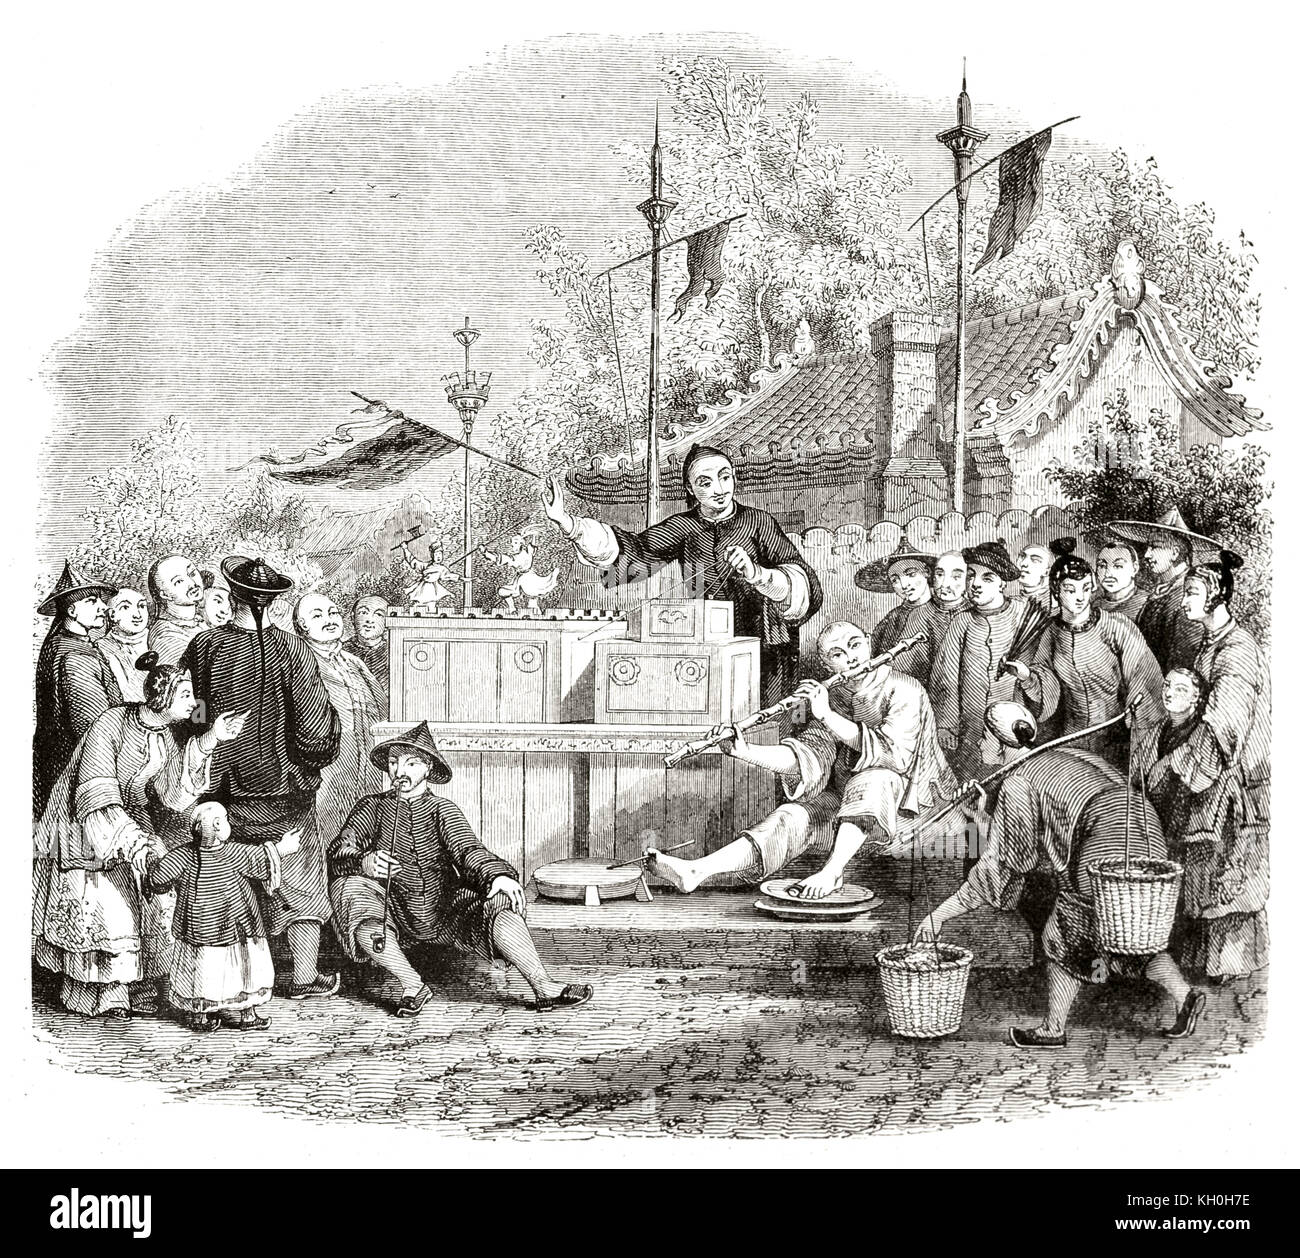 Vecchia illustrazione delle marionette cinesi teatro itinerante. Da Freeman, publ. su Magasin pittoresco, Parigi, 1847 Foto Stock